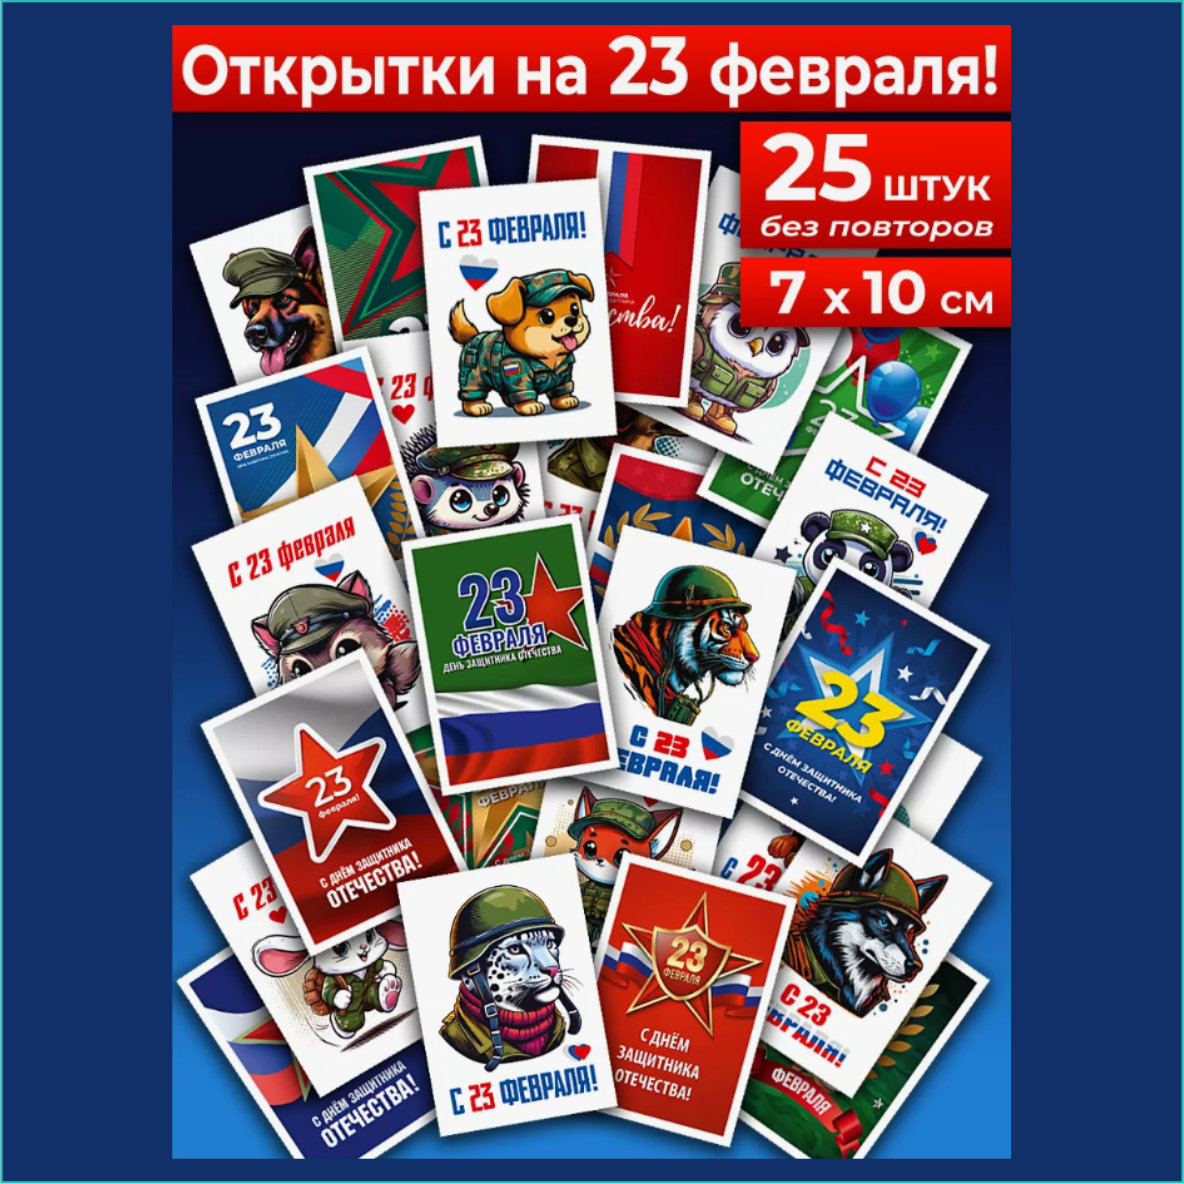 Подарочный набор мини-открыток "23 февраля" (25 шт. без повторов)